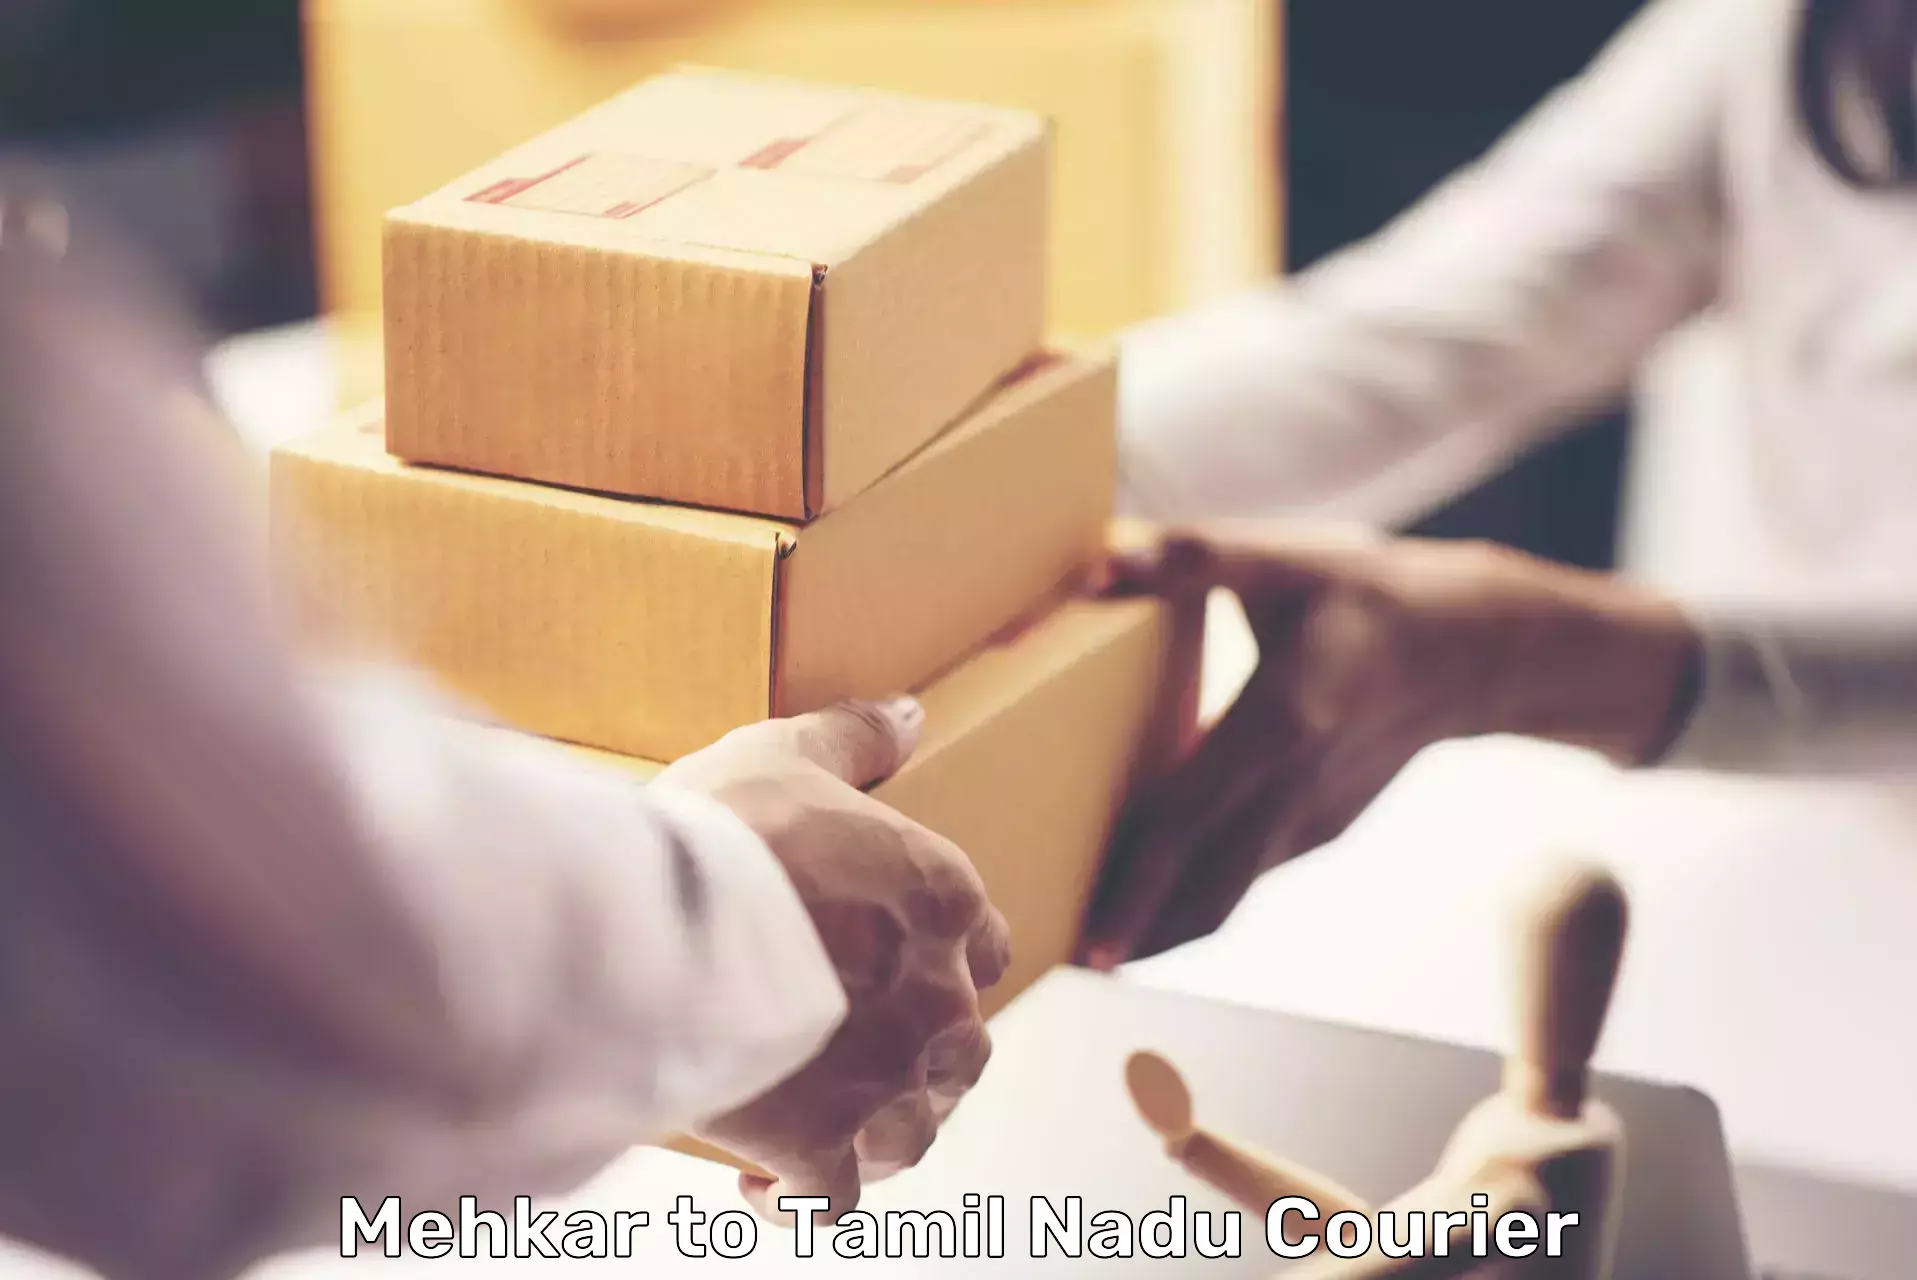 Digital courier platforms Mehkar to Tamil Nadu